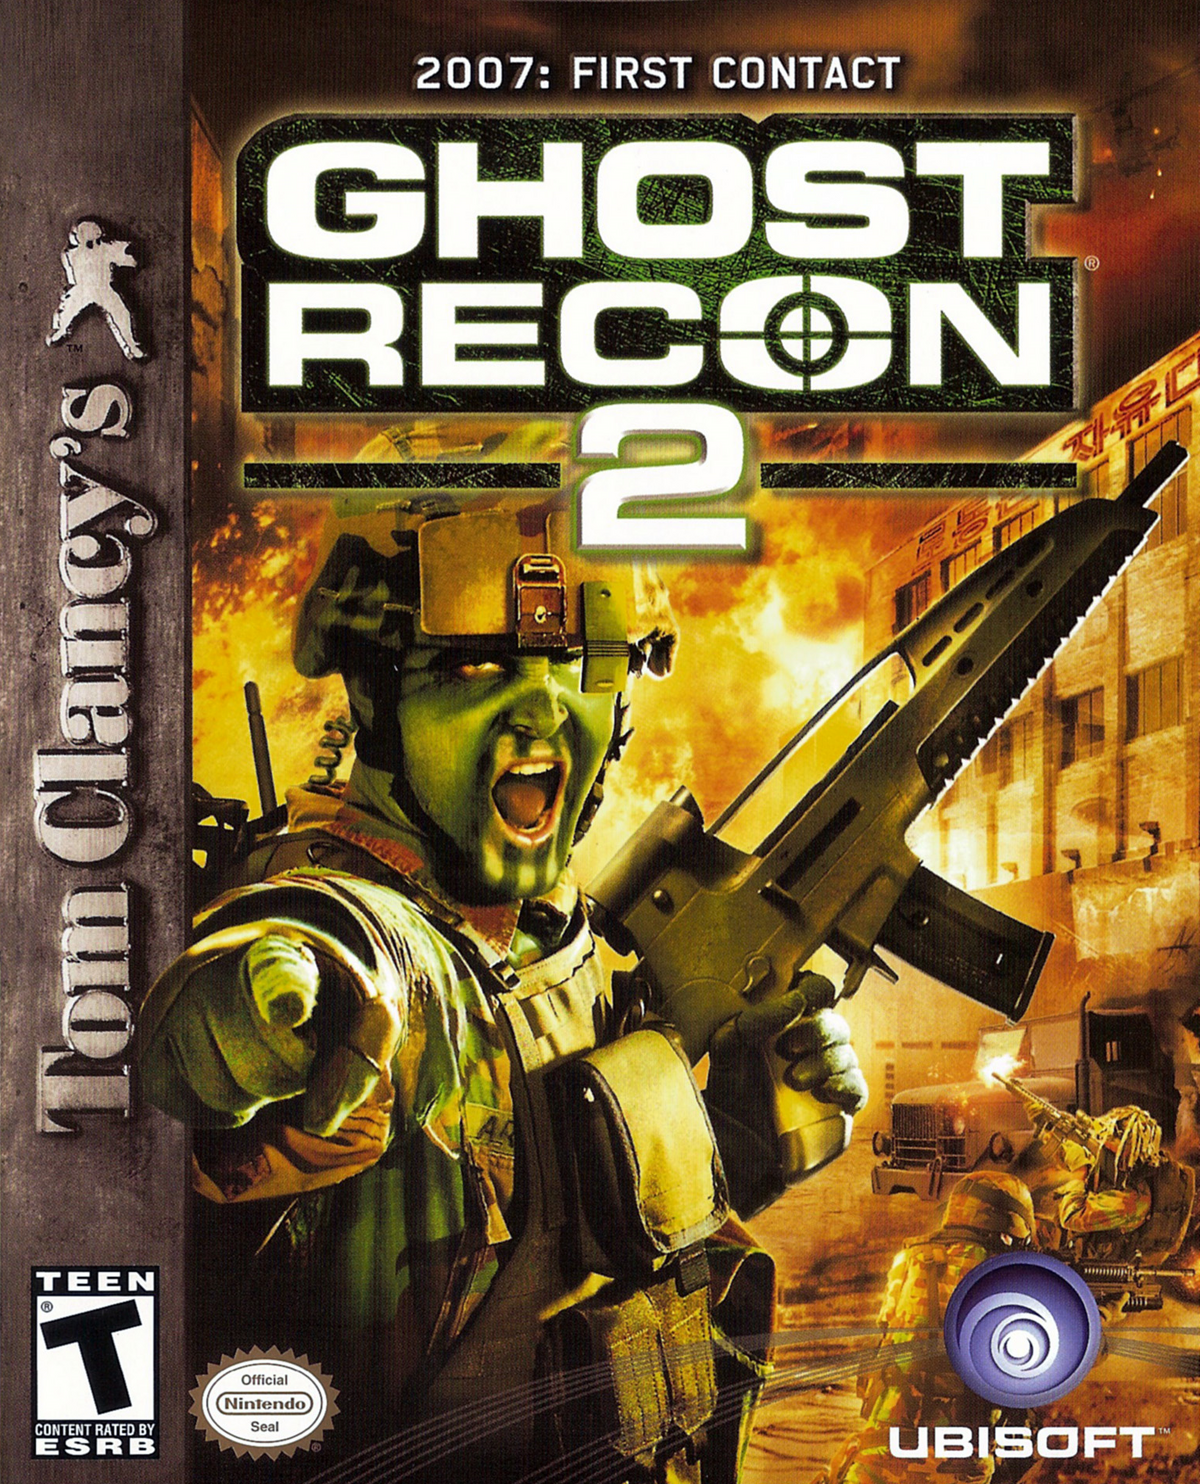 Jogo Tom Clancy's Ghost Recon Wildlands Xbox One Ubisoft com o Melhor Preço  é no Zoom